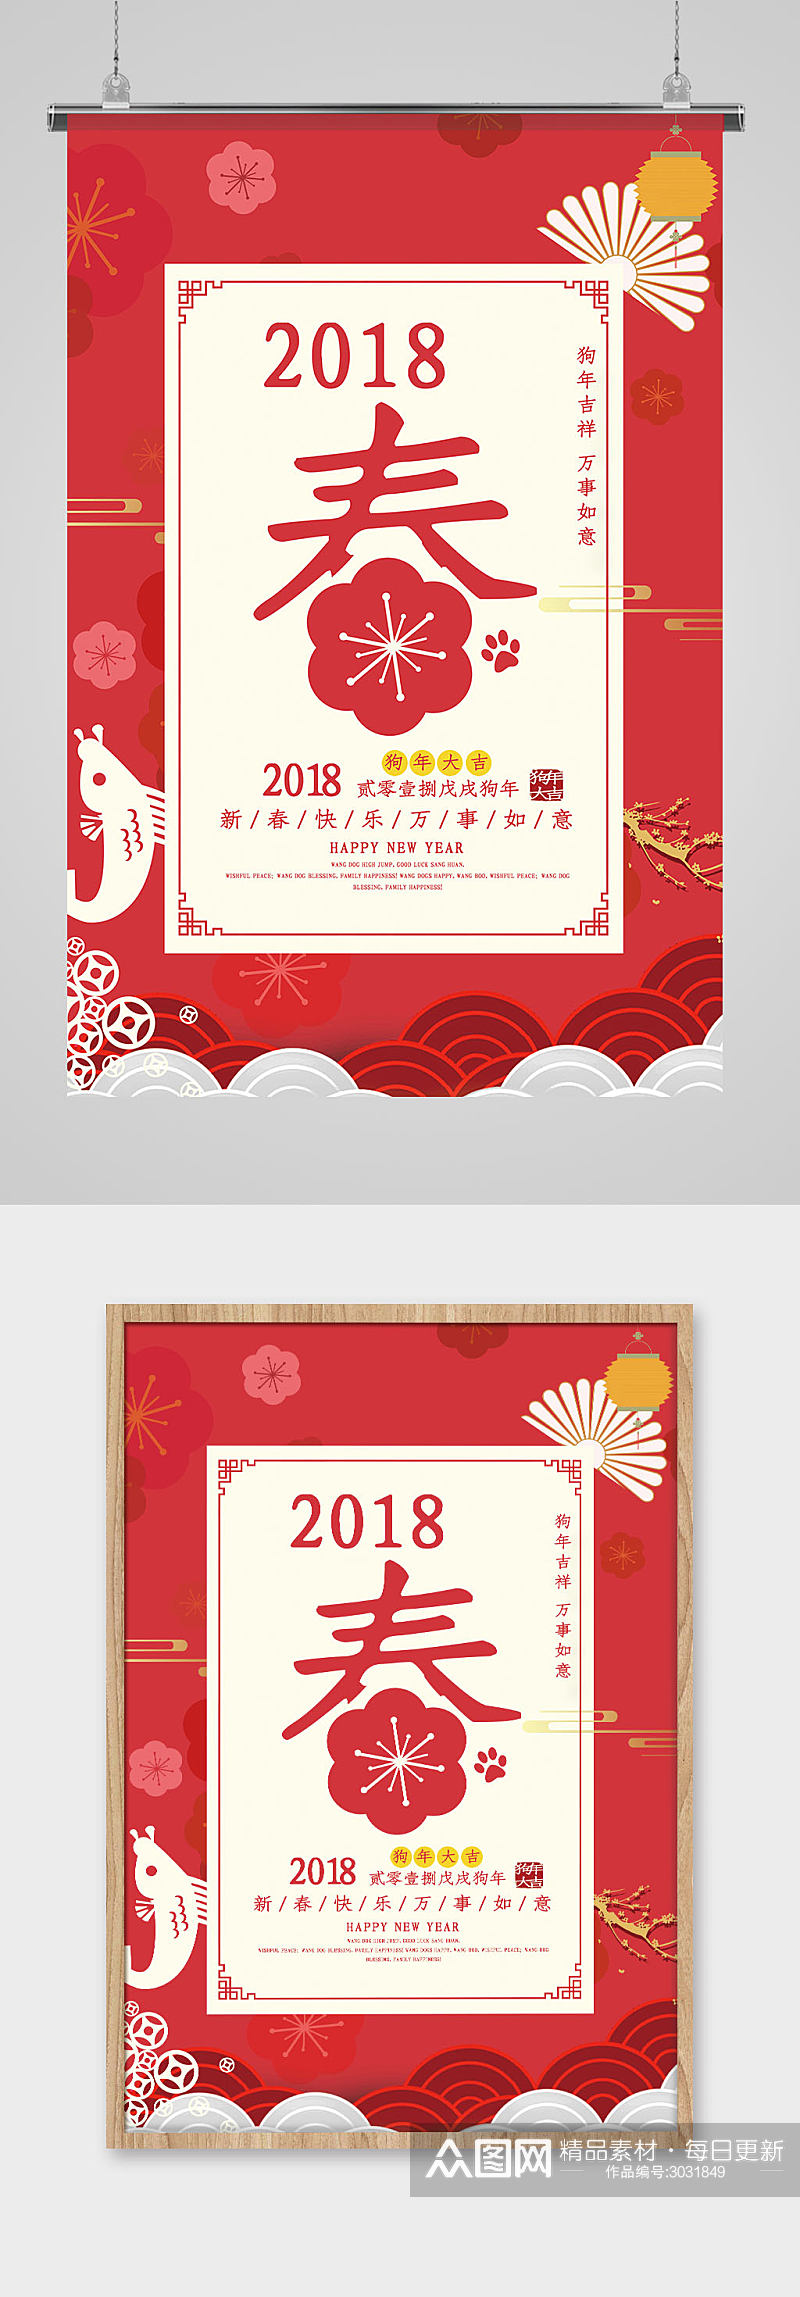 2018狗年喜庆春节海报素材